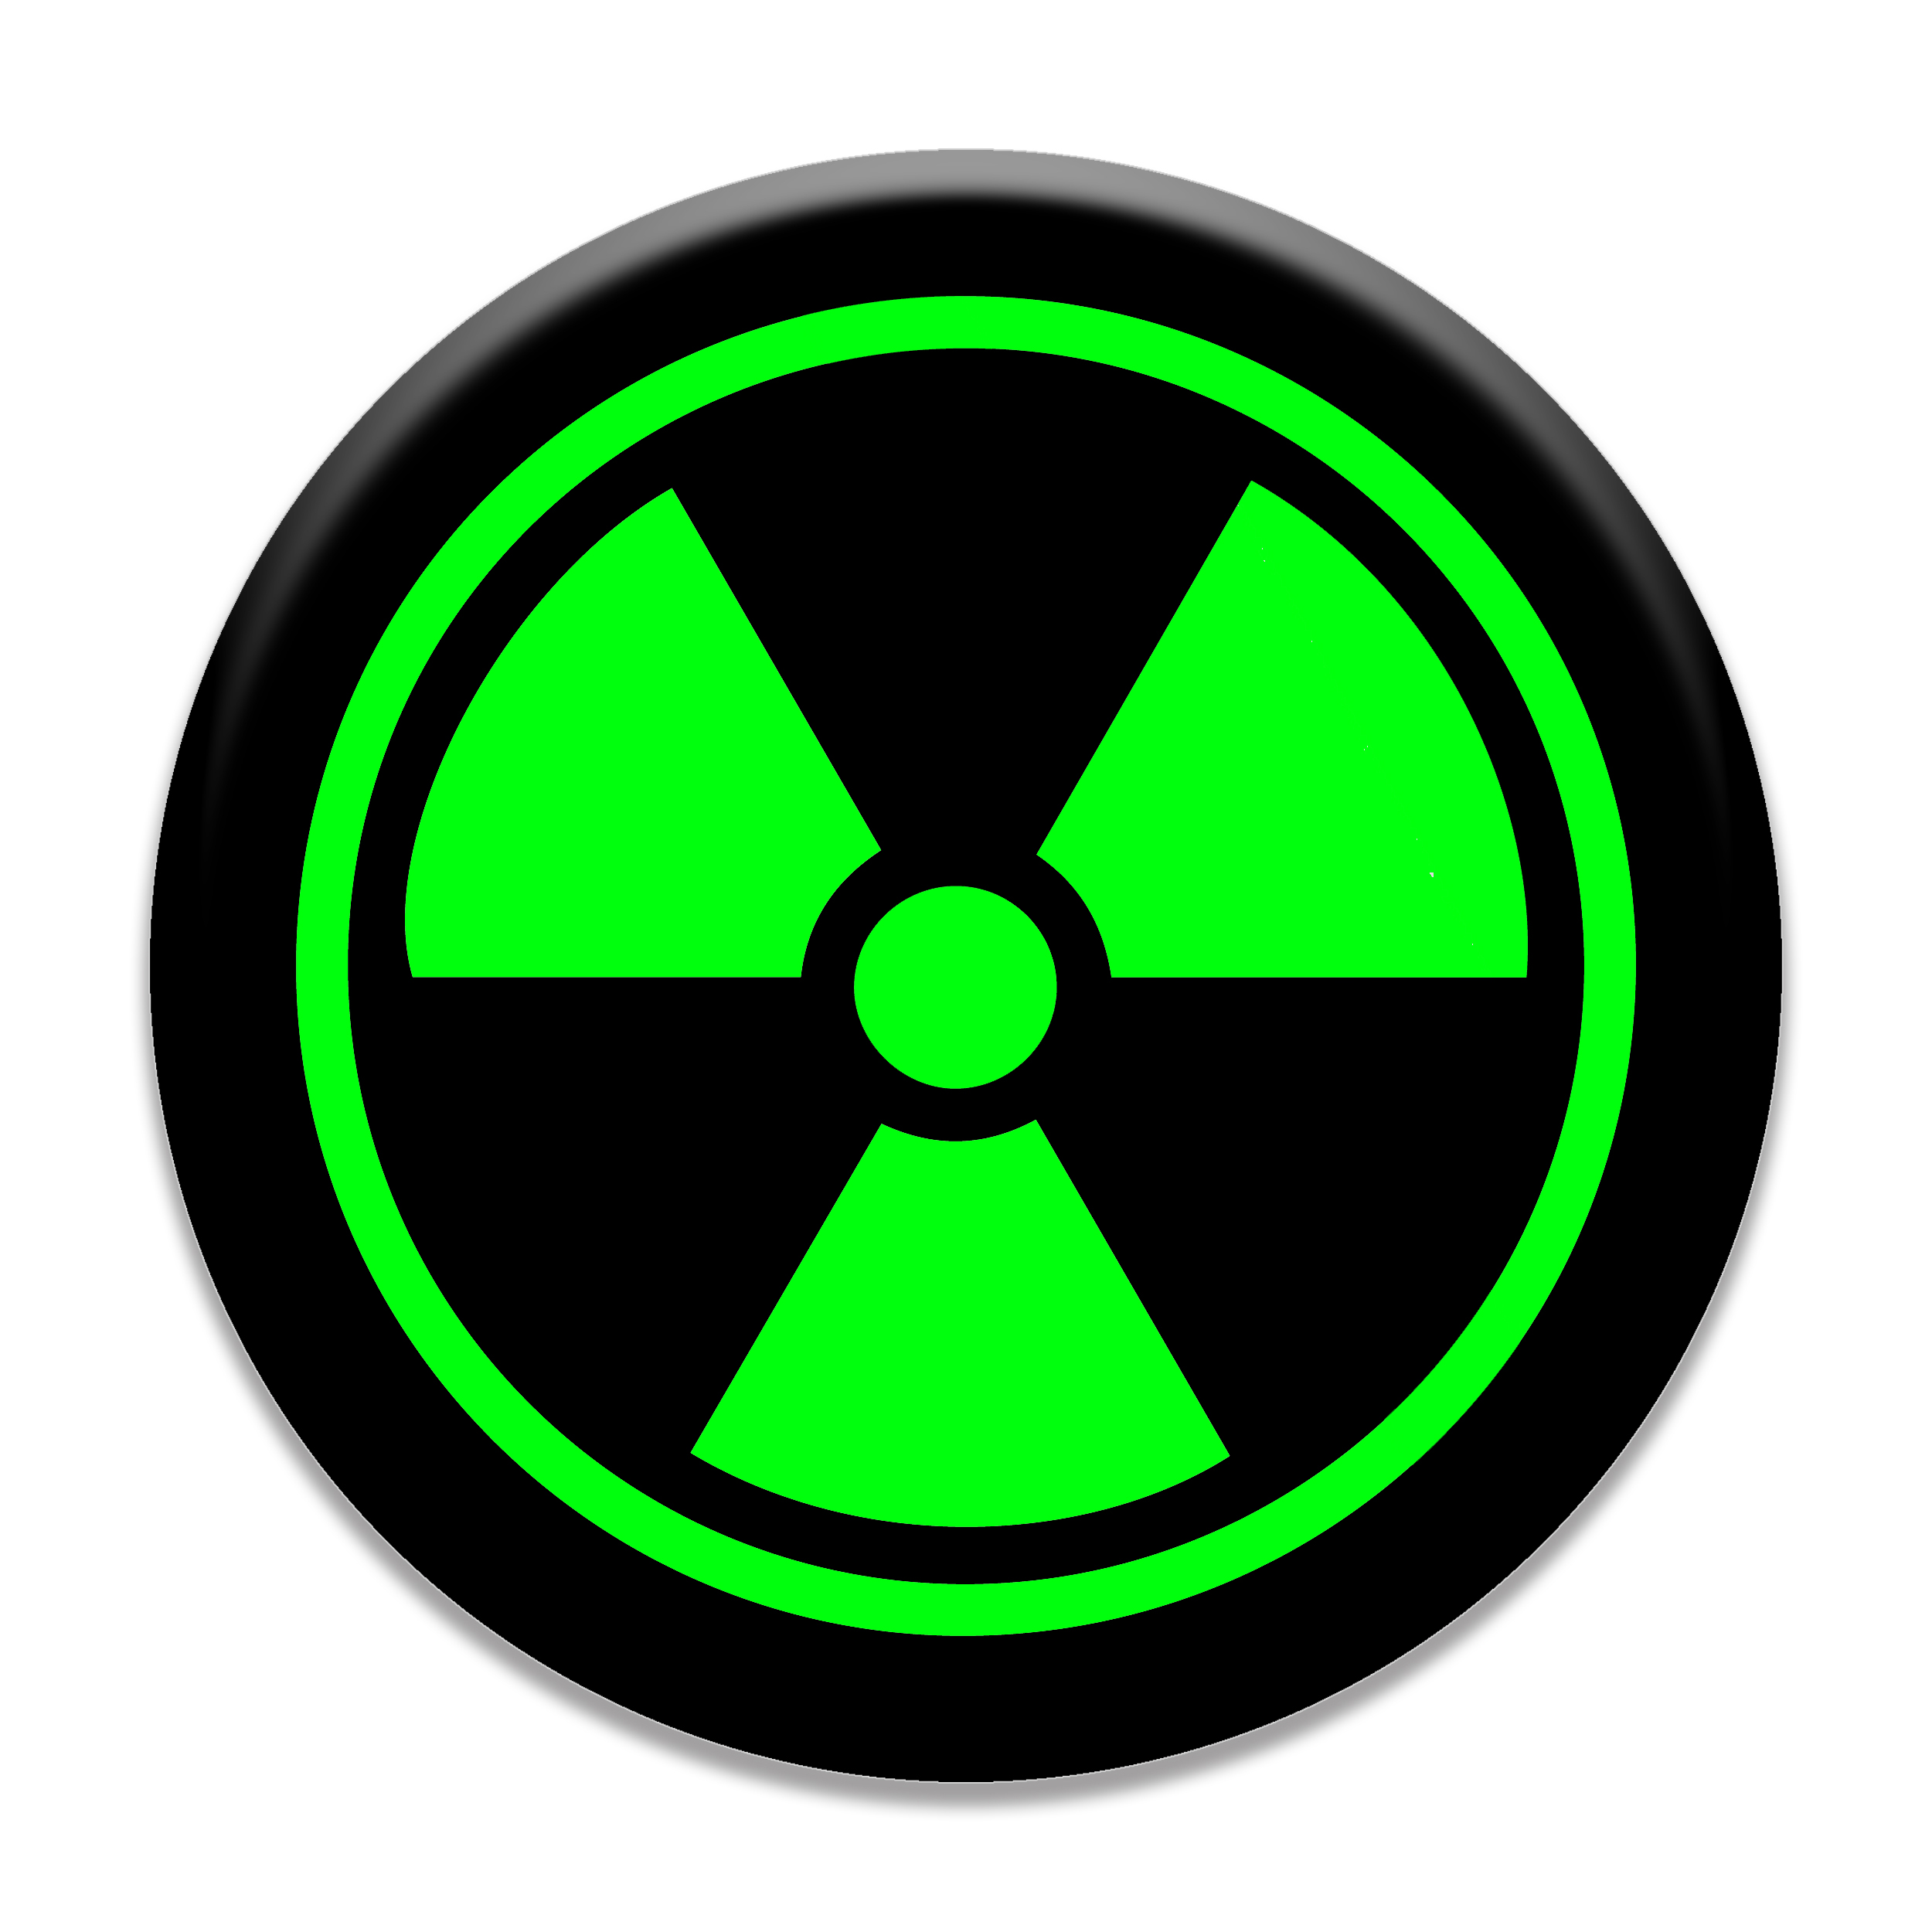  برچسب موبایل مای سیحان مدل Radioactive Danger مناسب برای پایه نگهدارنده مغناطیسی 